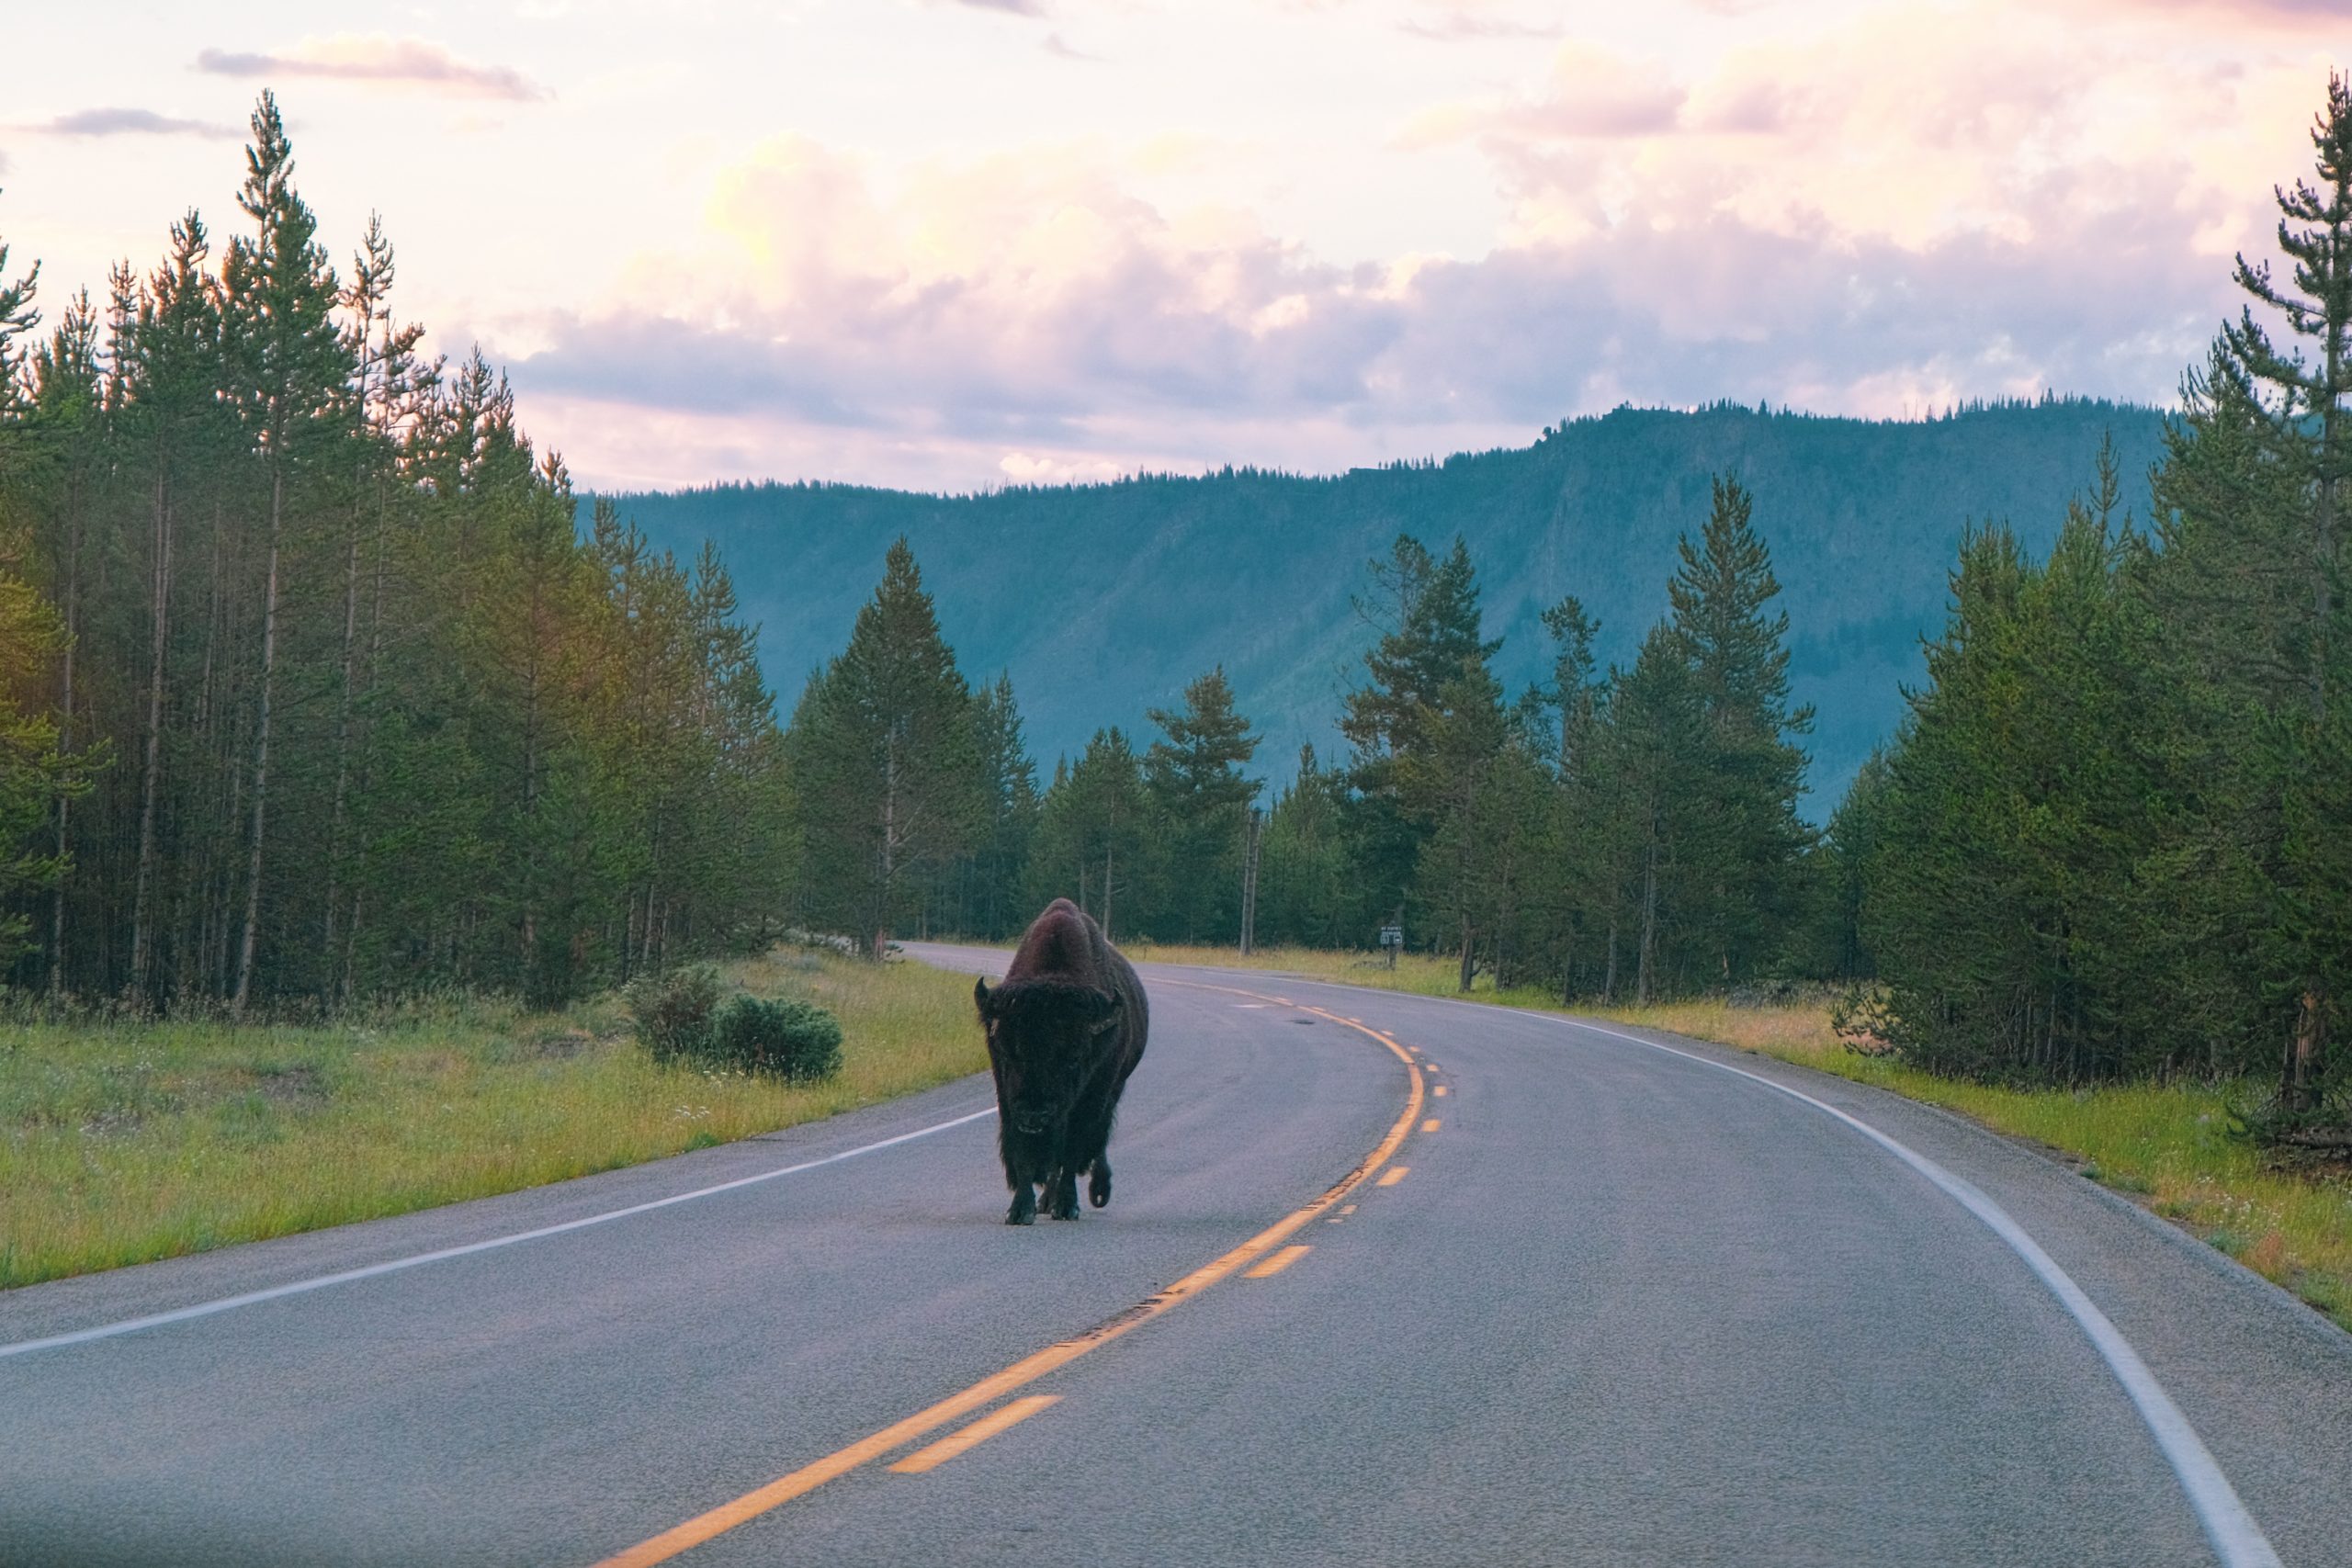 Un bisonte stava camminando tranquillamente sulla strada mentre guidavamo a Yellowstone la mattina presto